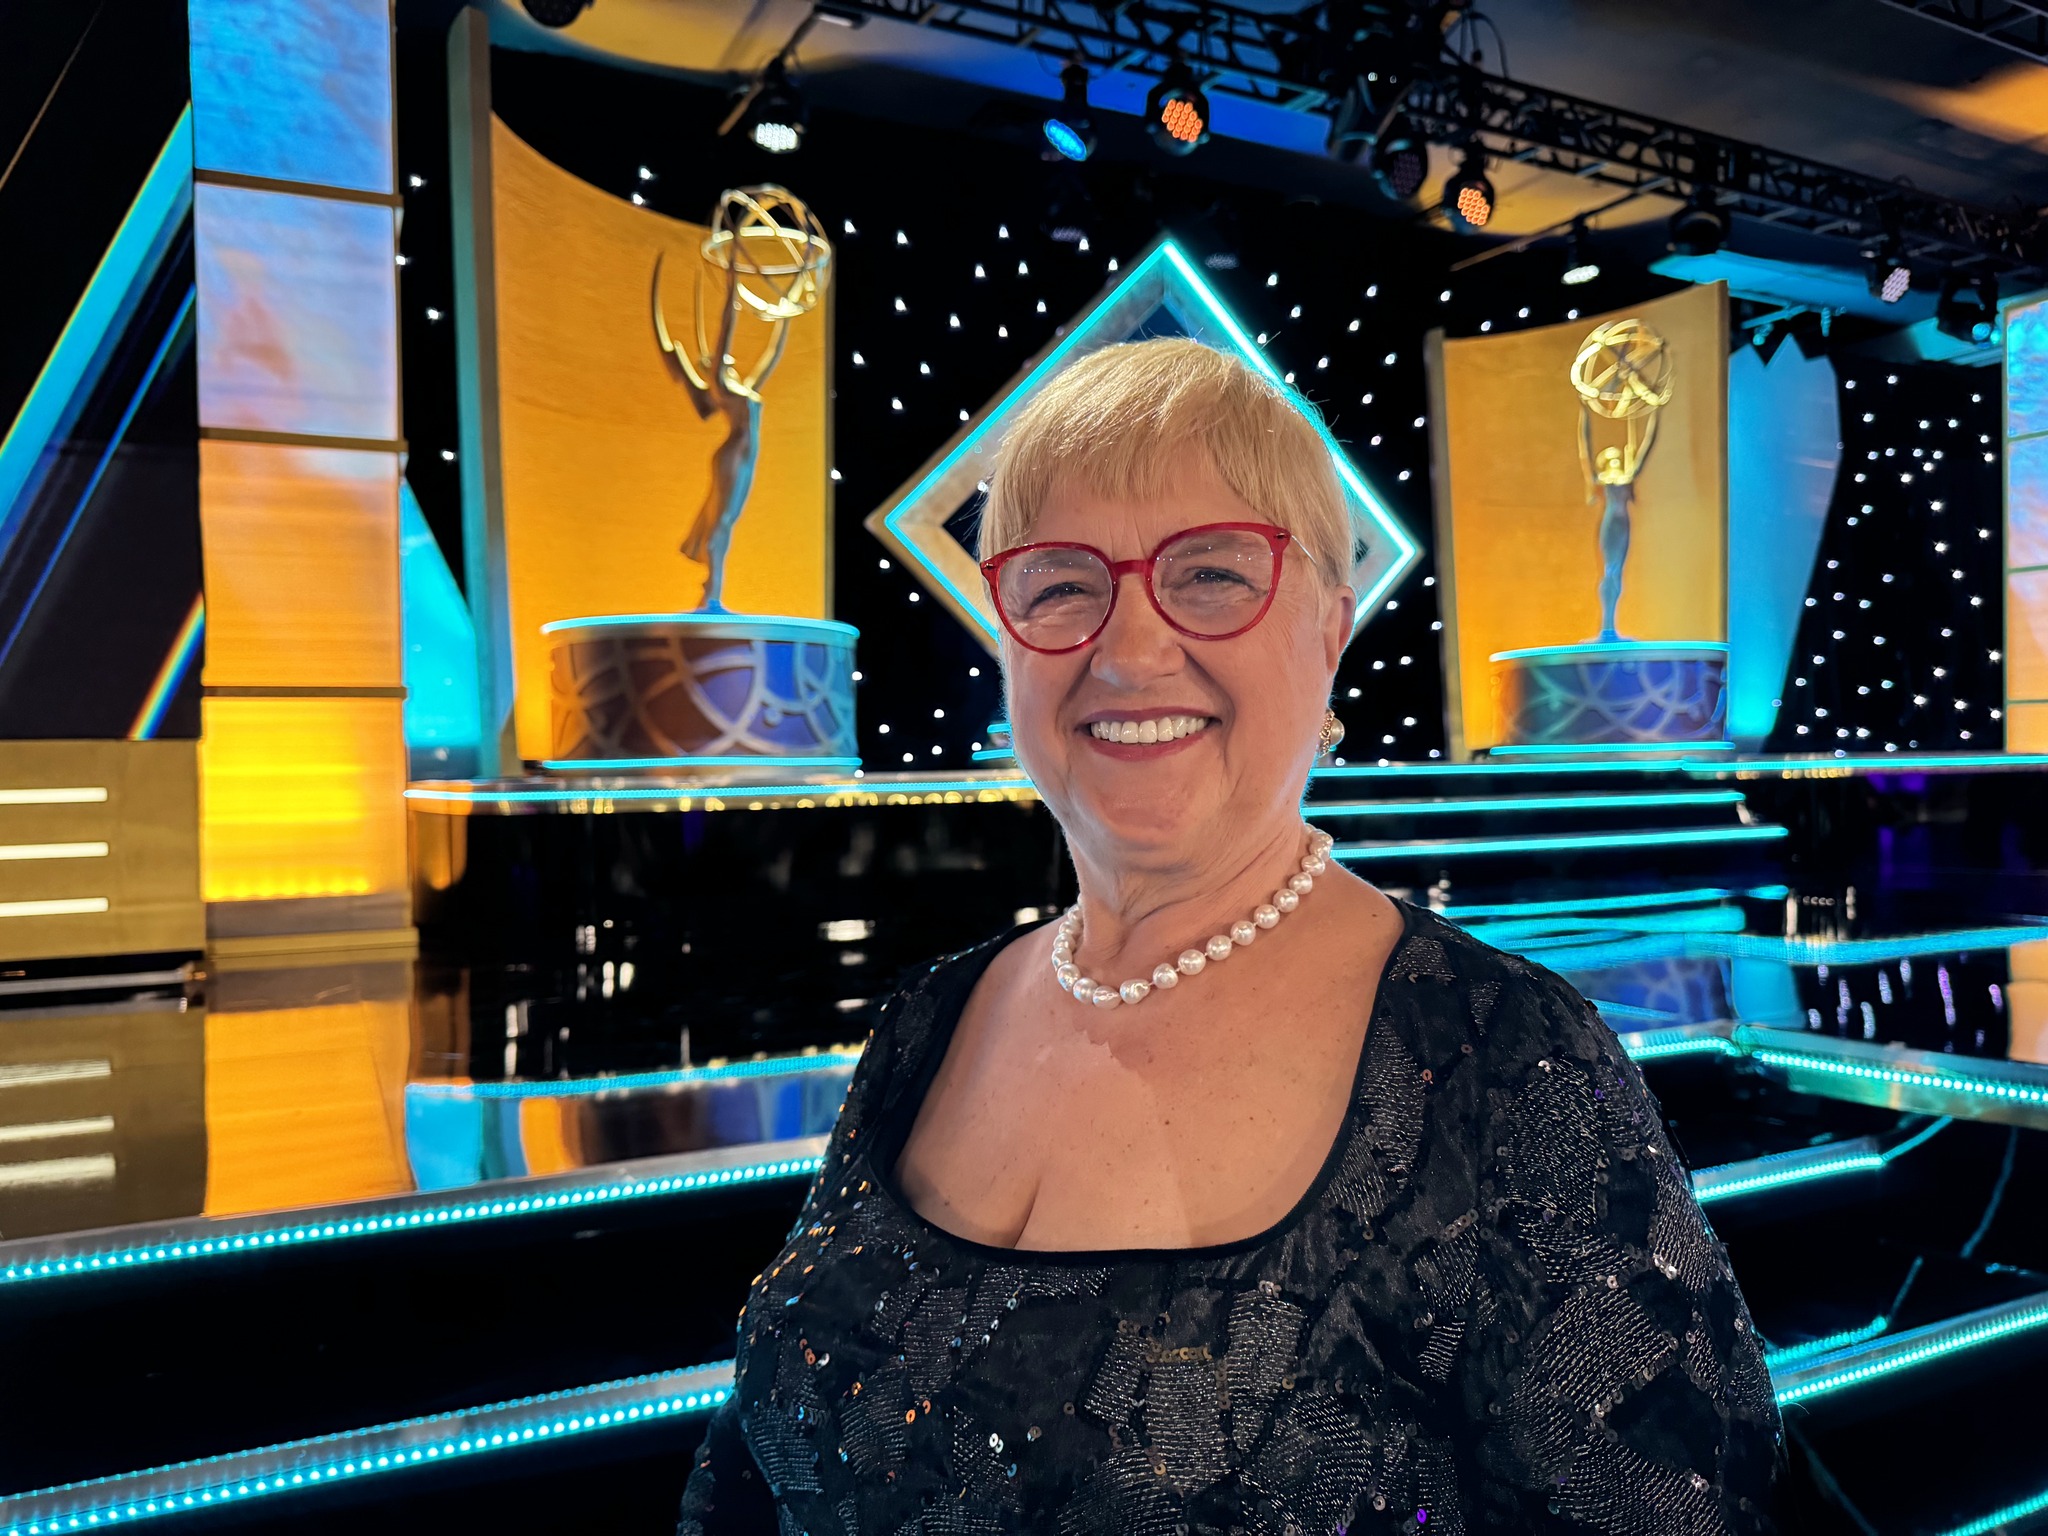 Lidia Bastianich won her 3rd Emmy Award